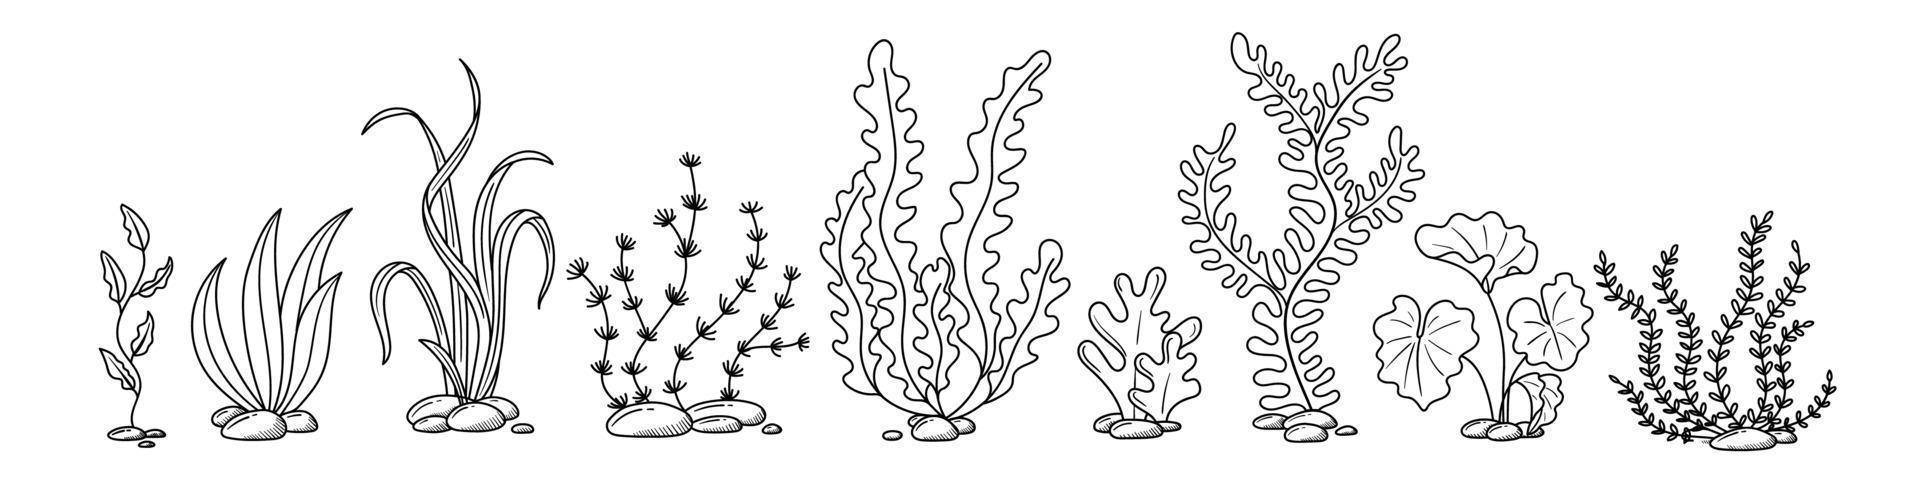 zeewier hand- getrokken in tekening stijl vector